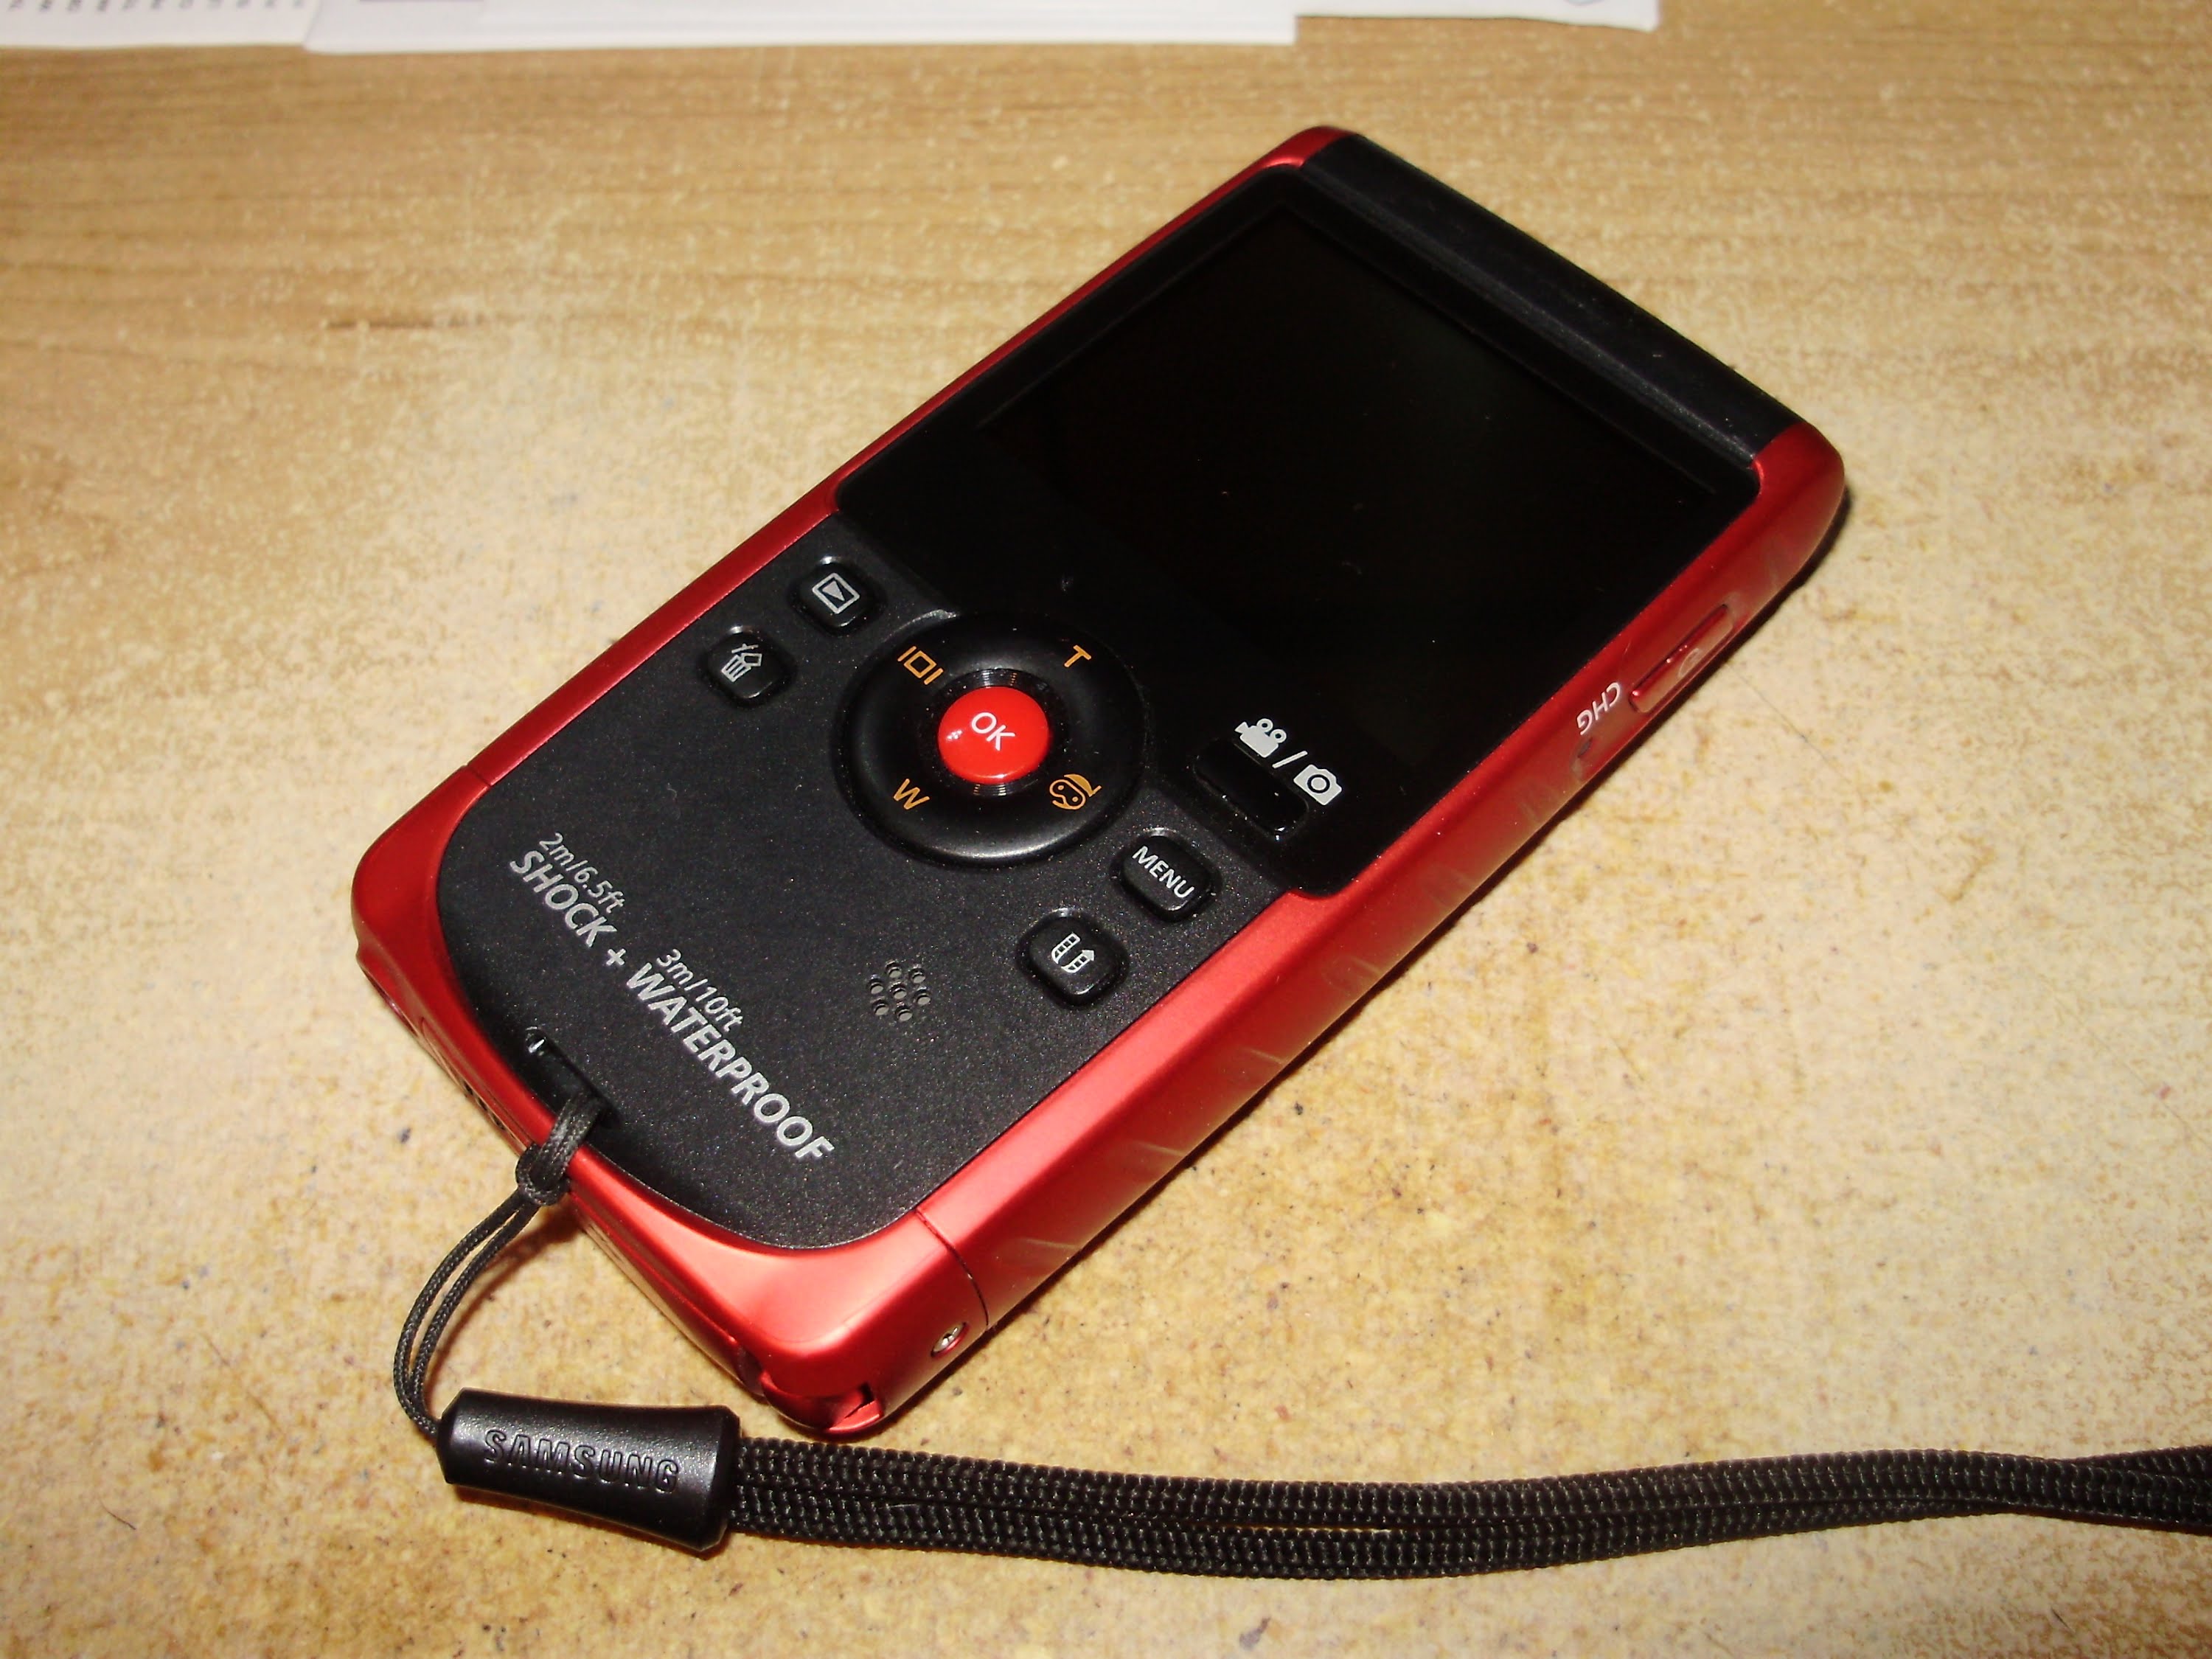 Samsung HMX-W200 HD waterproof shockproof dustproof digital camera / camcorder